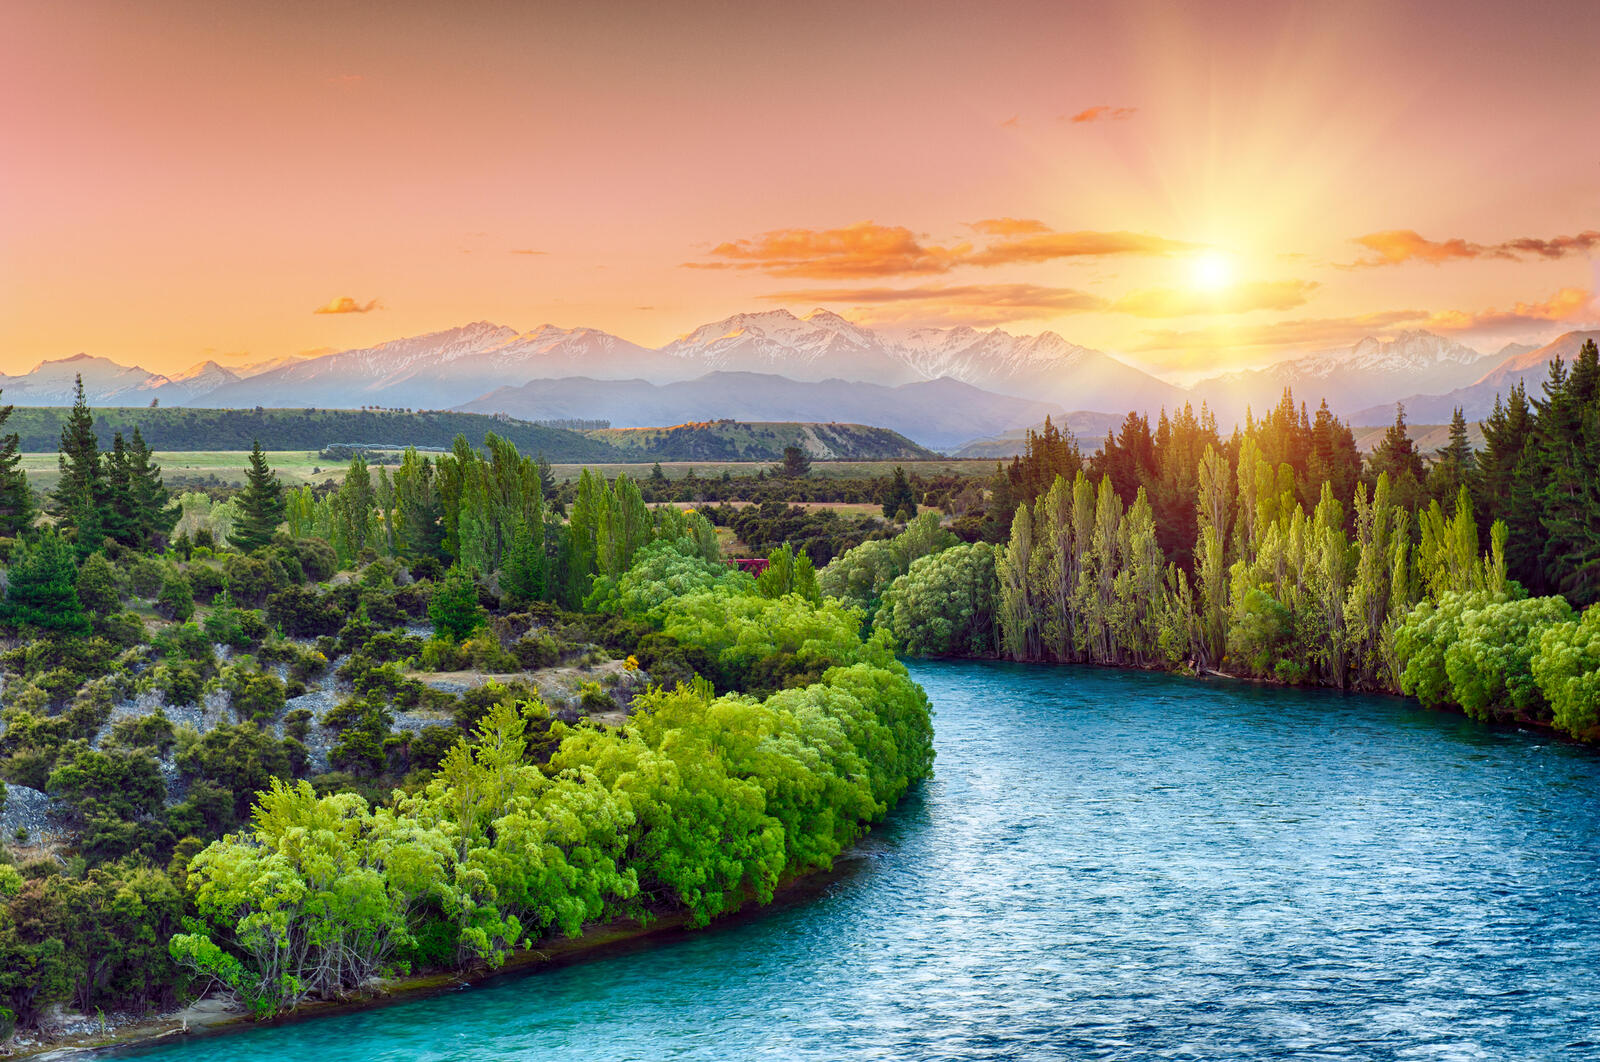 Обои Clutha river South Island New Zealand на рабочий стол